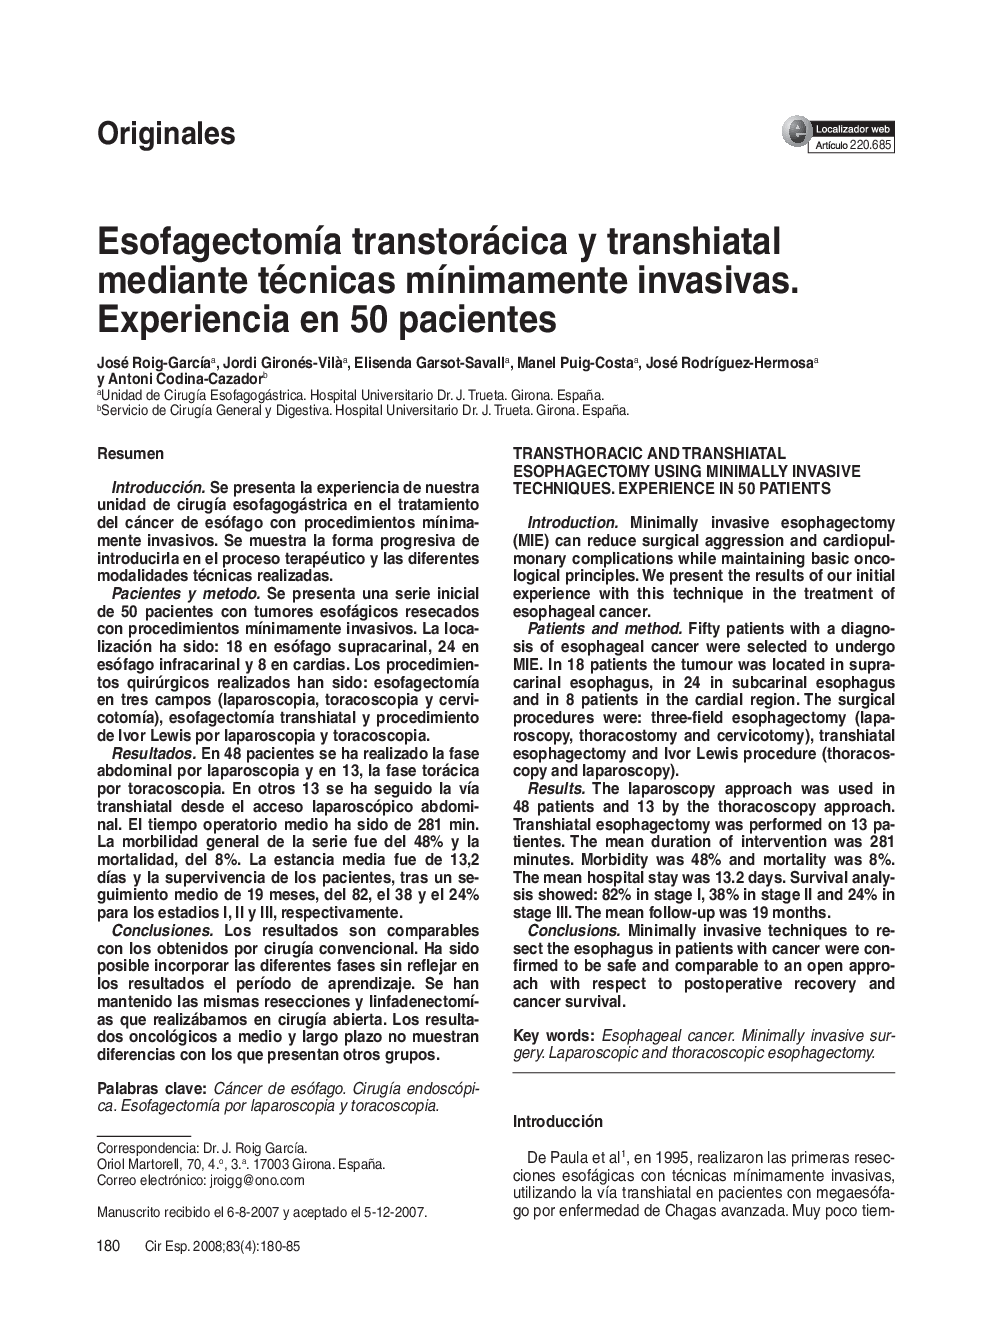 EsofagectomÃ­a transtorácica y transhiatal mediante técnicas mÃ­nimamente invasivas. Experiencia en 50 pacientes